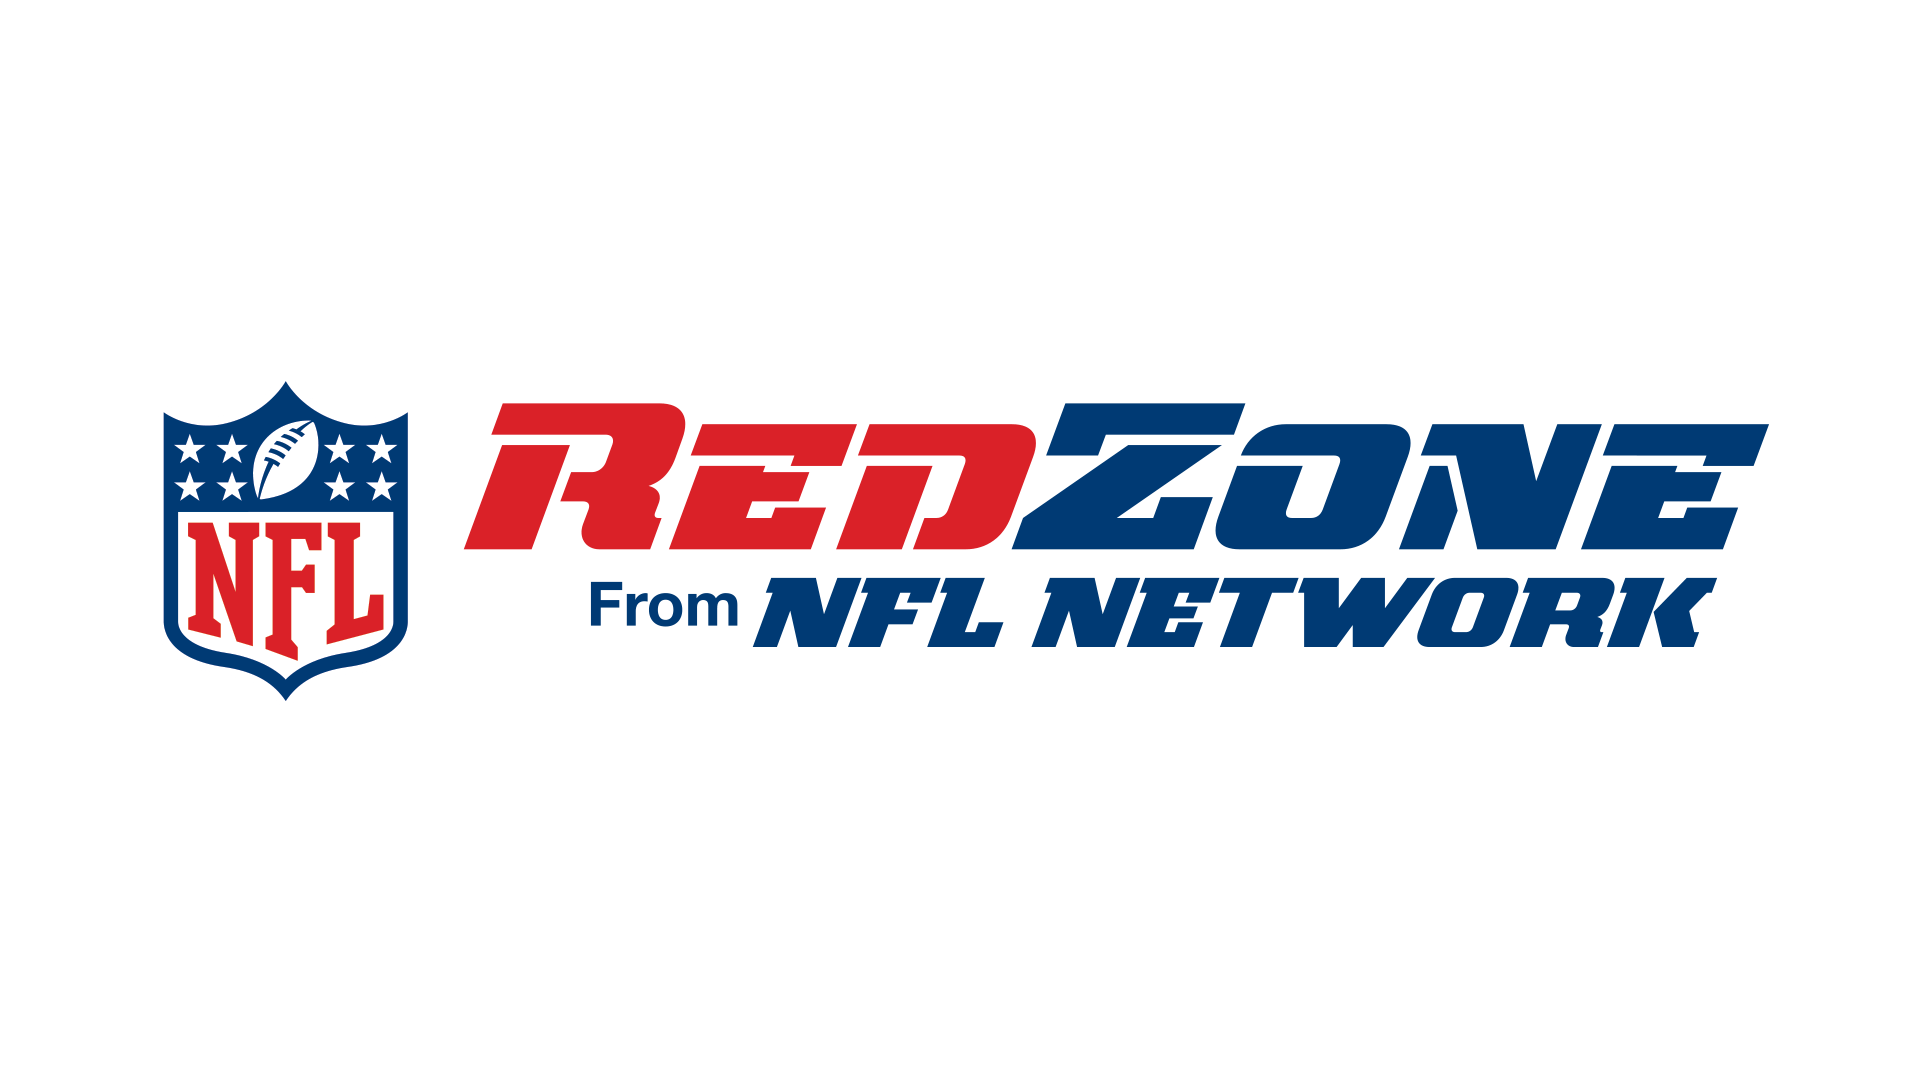 NFL RedZone Logo - Image - Nfl-redzone-2014-logo.png | Logopedia | FANDOM powered by Wikia